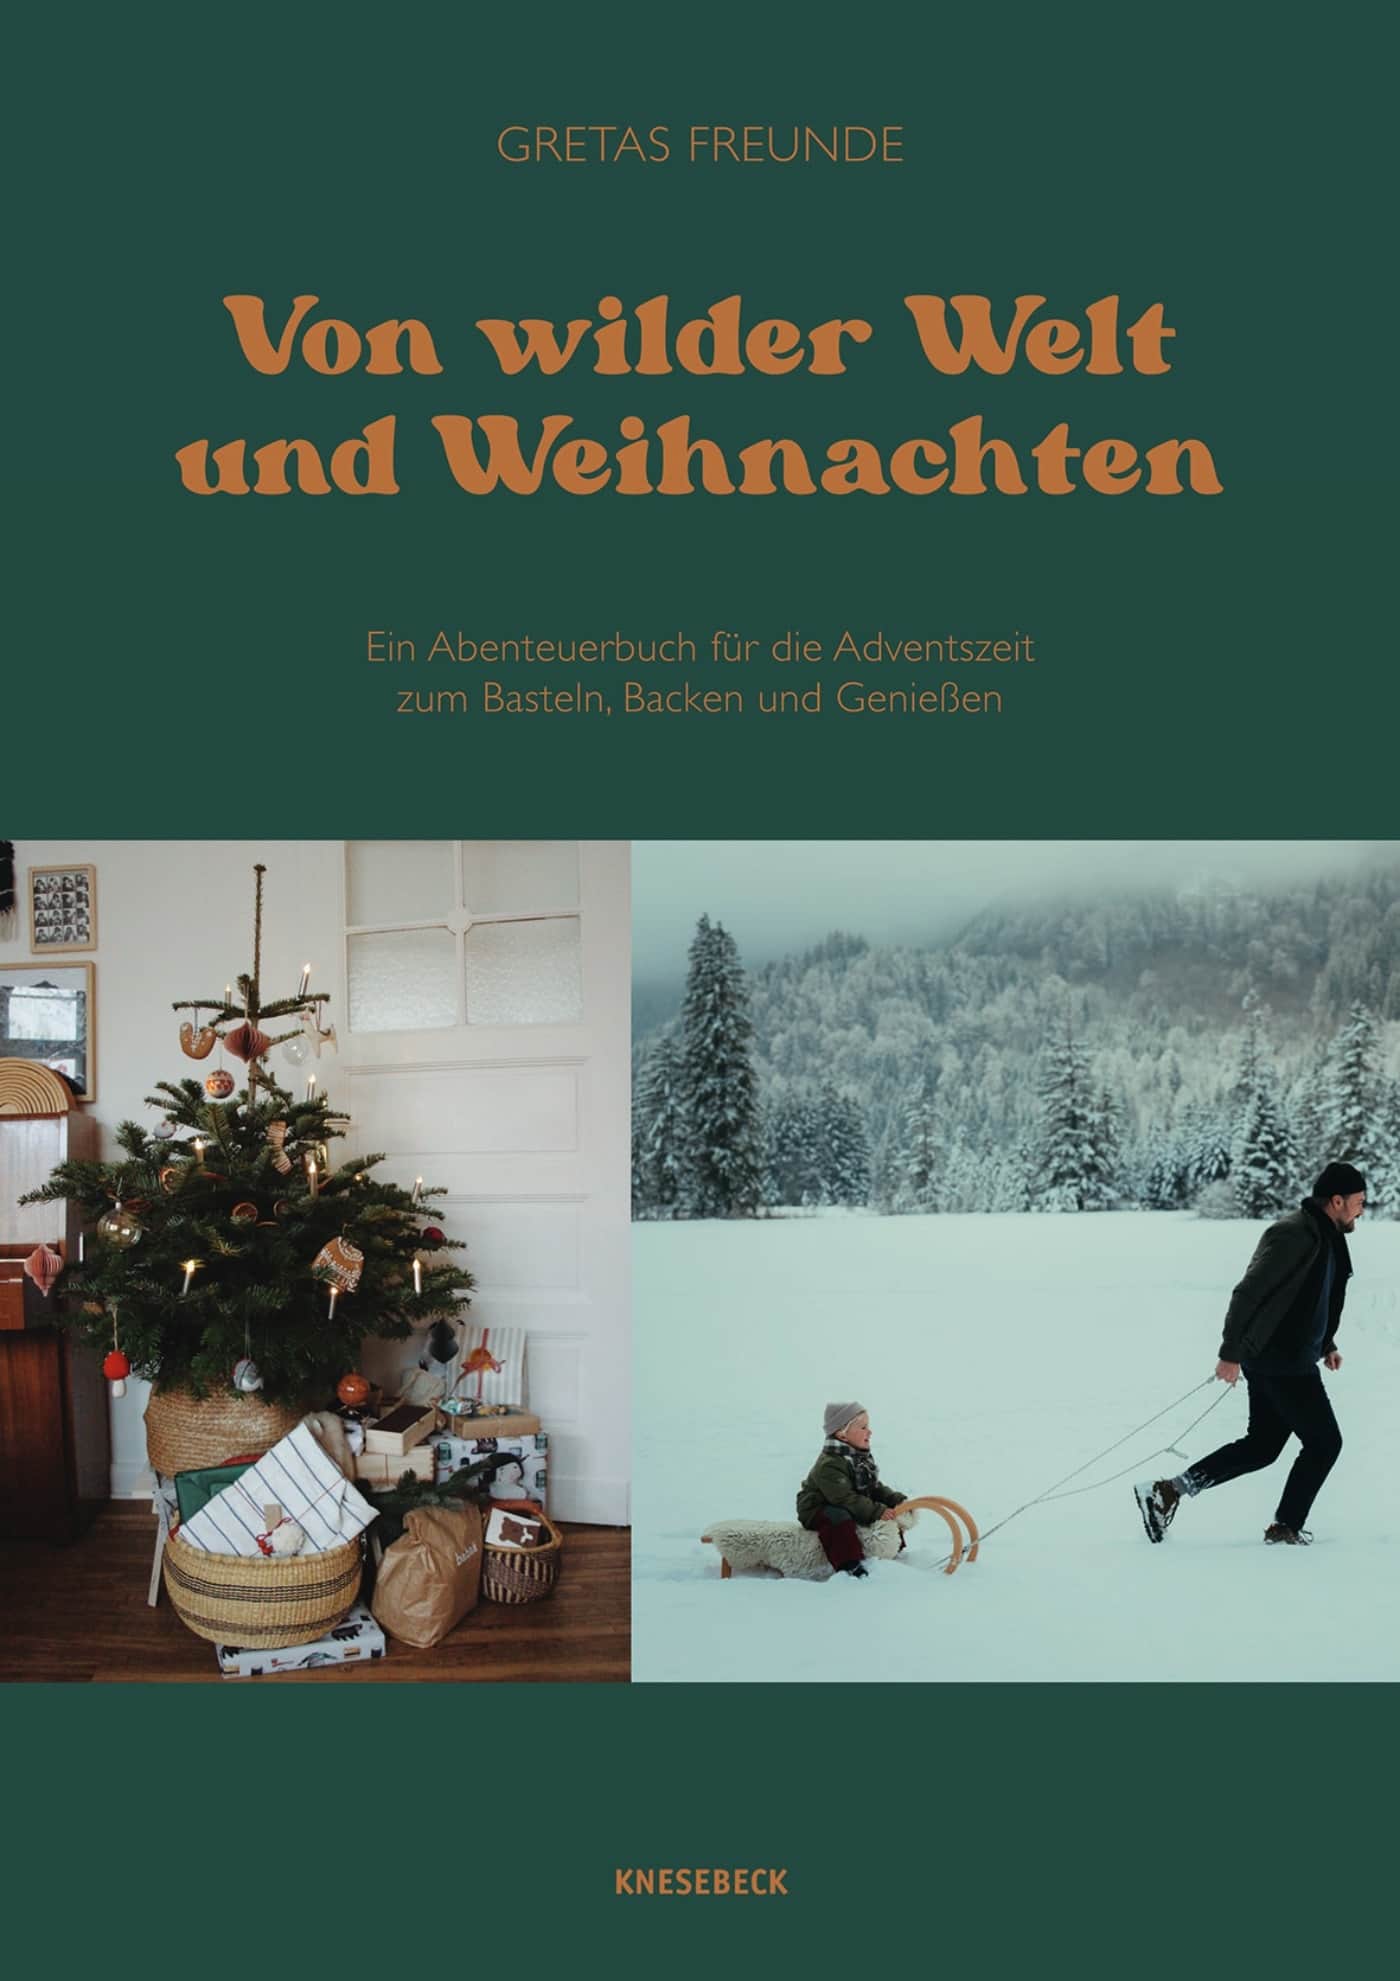 Weihnachtsbuch von Gretas Freunde: Basteln, Backen, Beisammensein mit Kindern, als Familie in der Weihnachtsfeier- und Winterzeit // HIMBEER